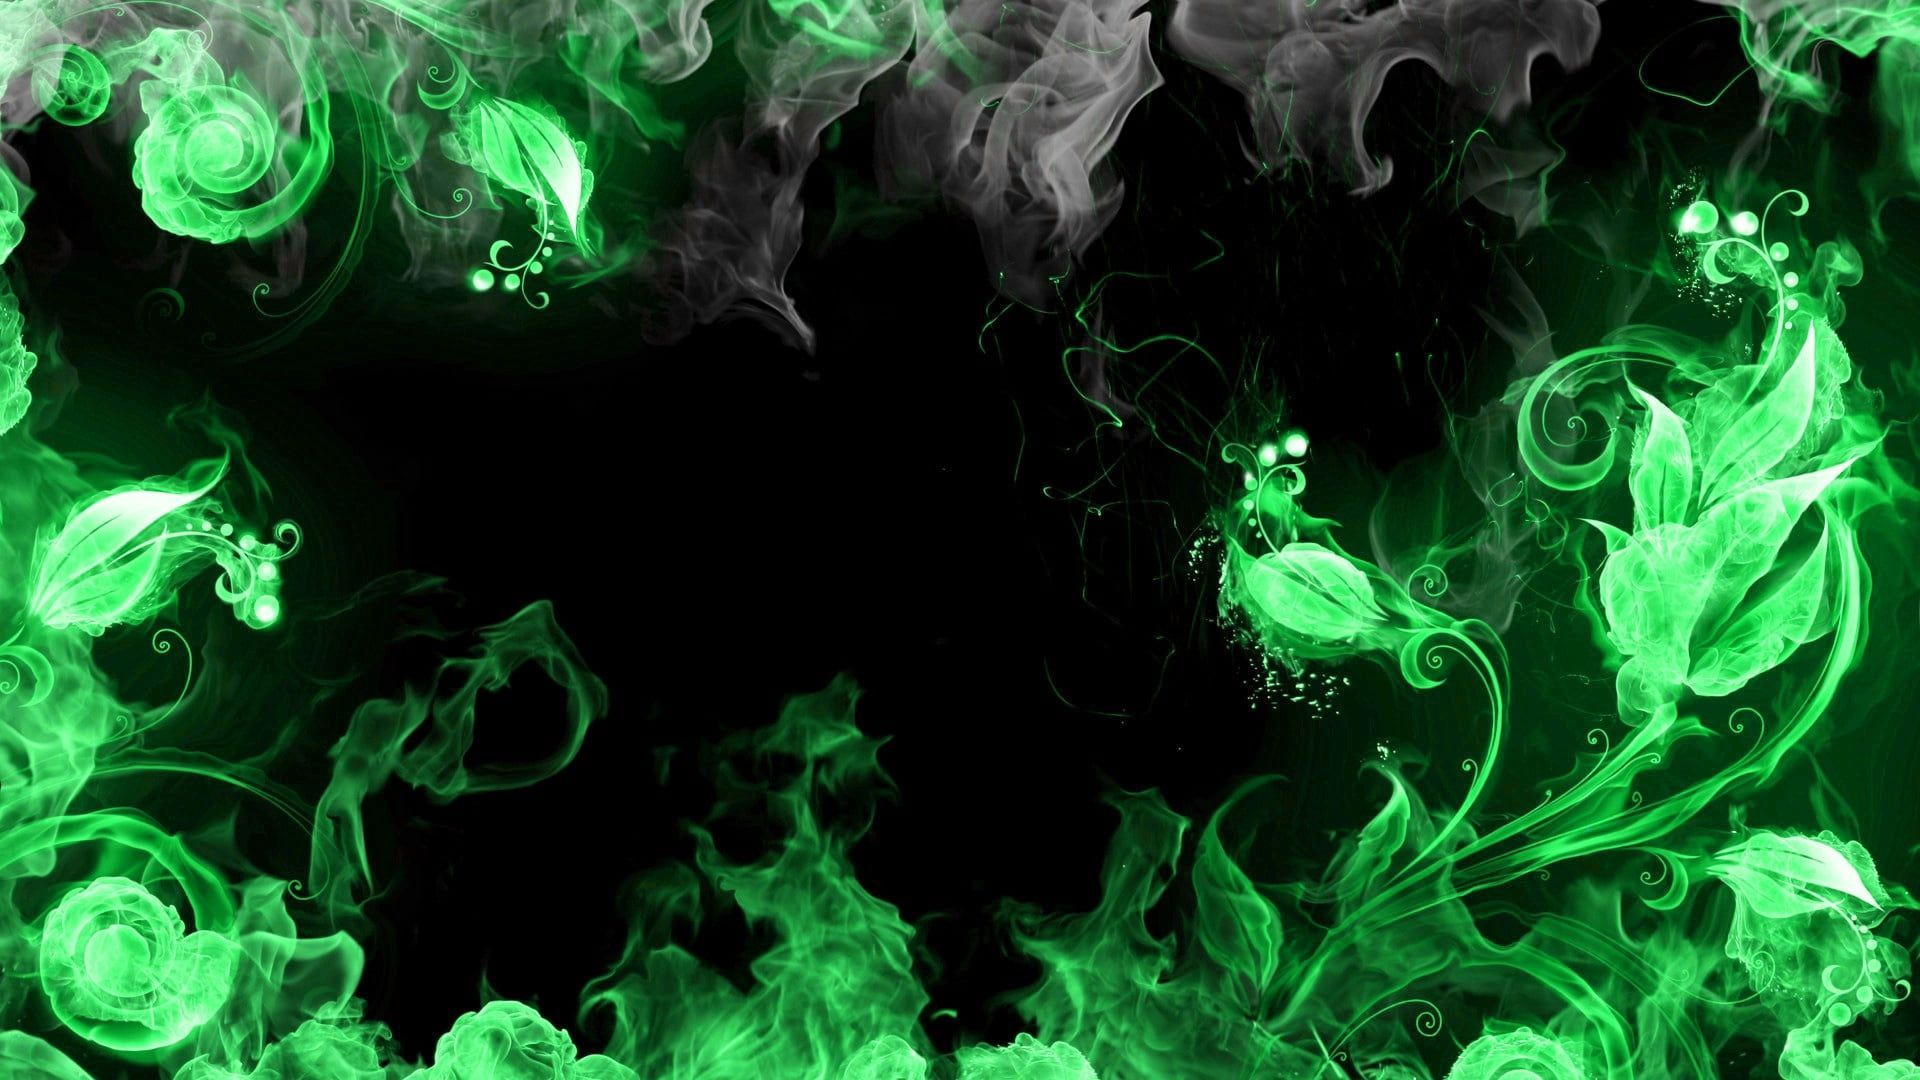 green fire illustration #abstract #blue #smoke #black P #wallpaper #hdwallpaper #desktop. Fire illustration, Fire wallpaper, Wallpaper 1920